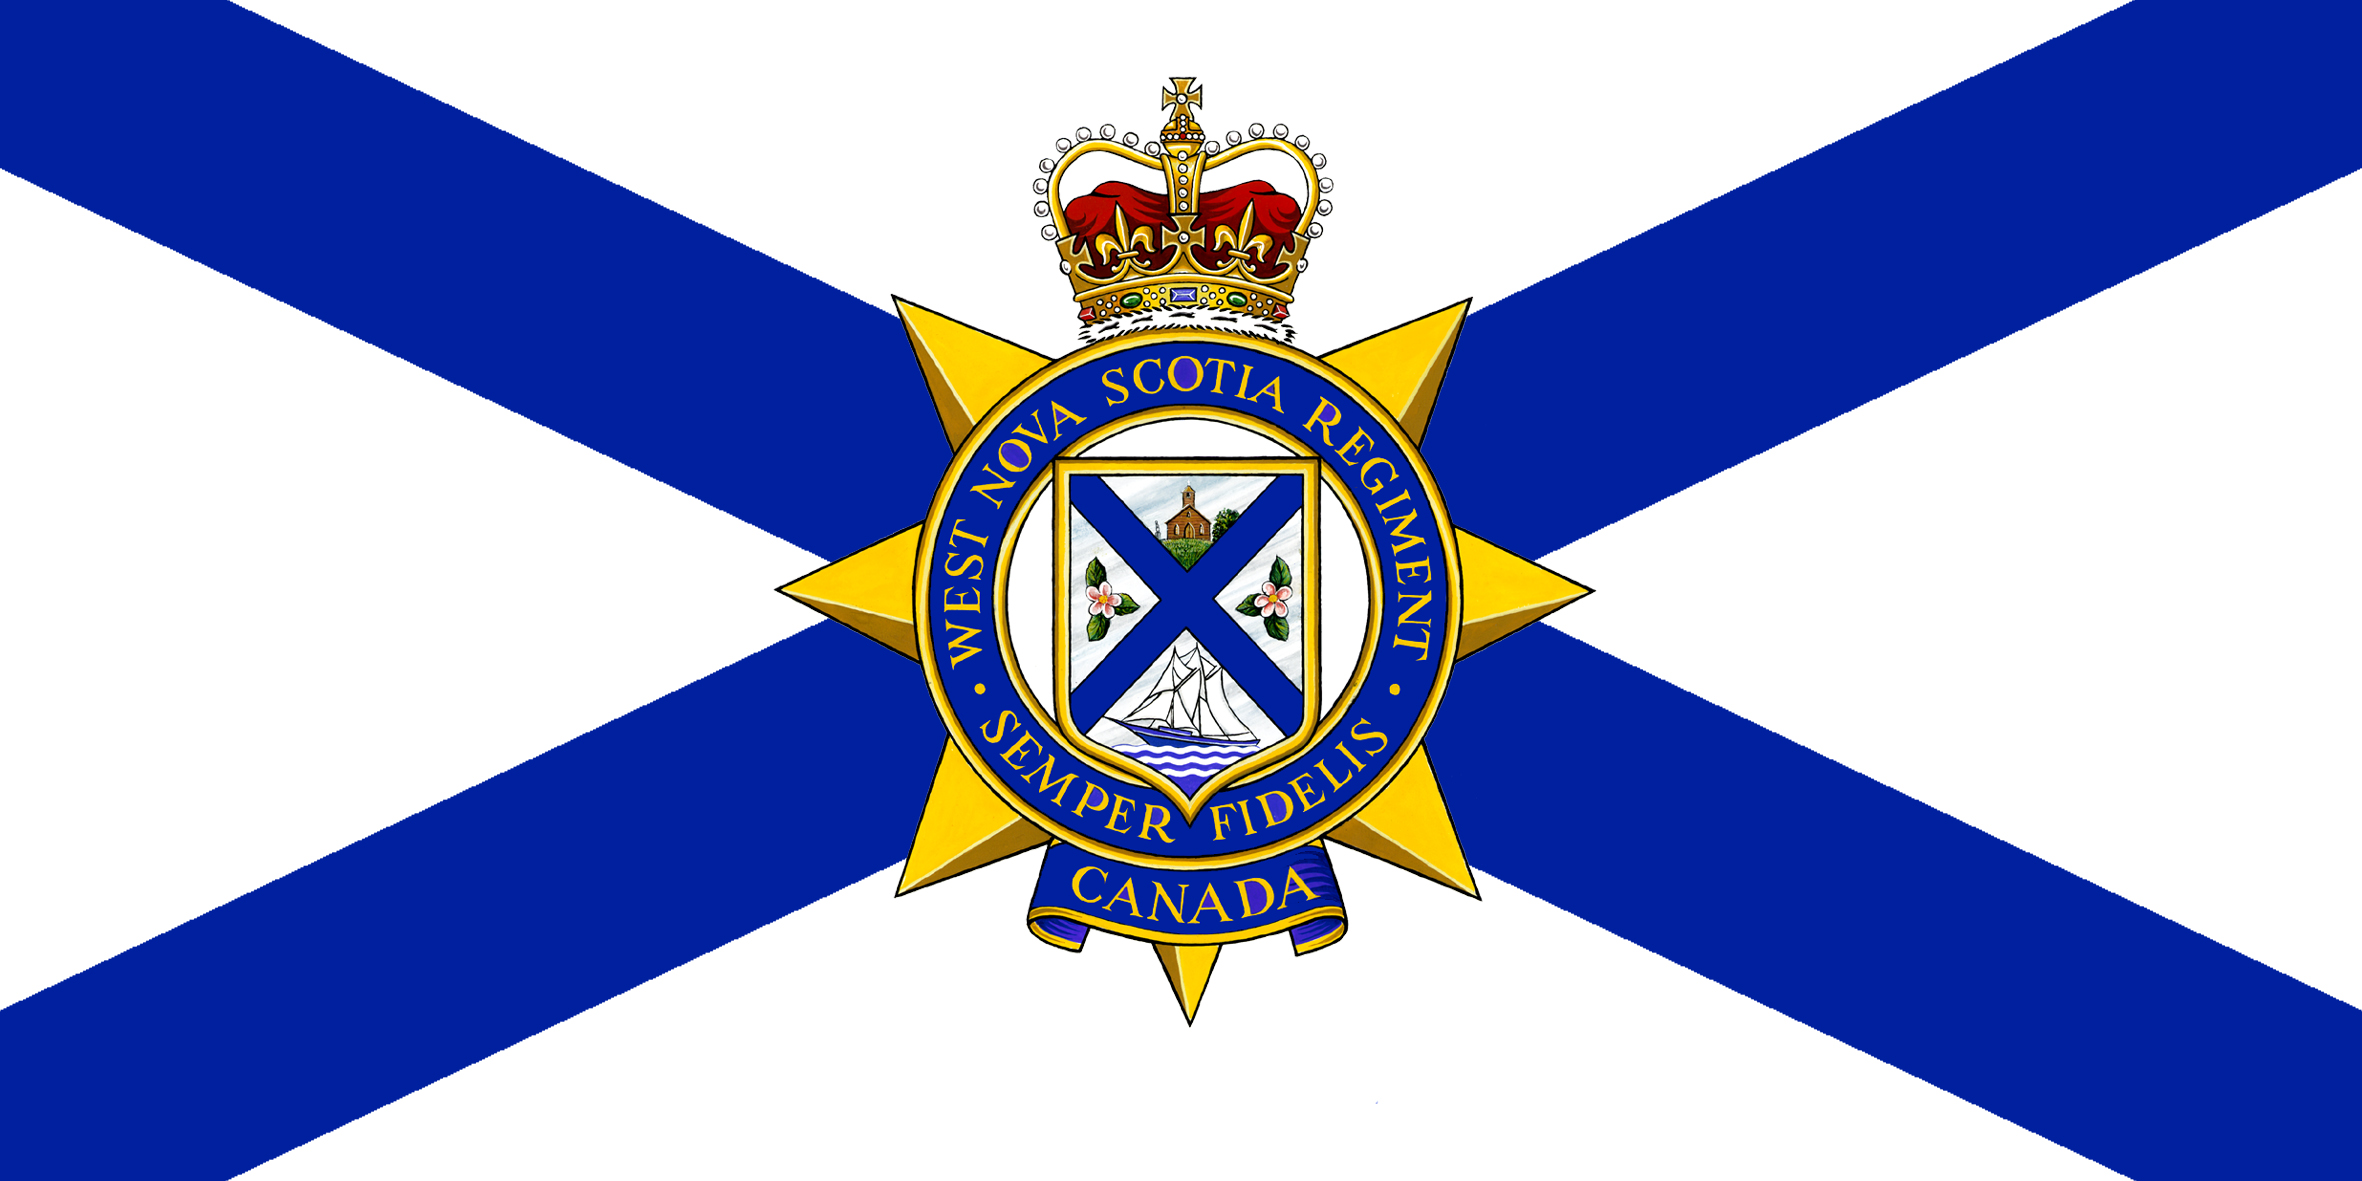 The West Nova Scotia Regiment